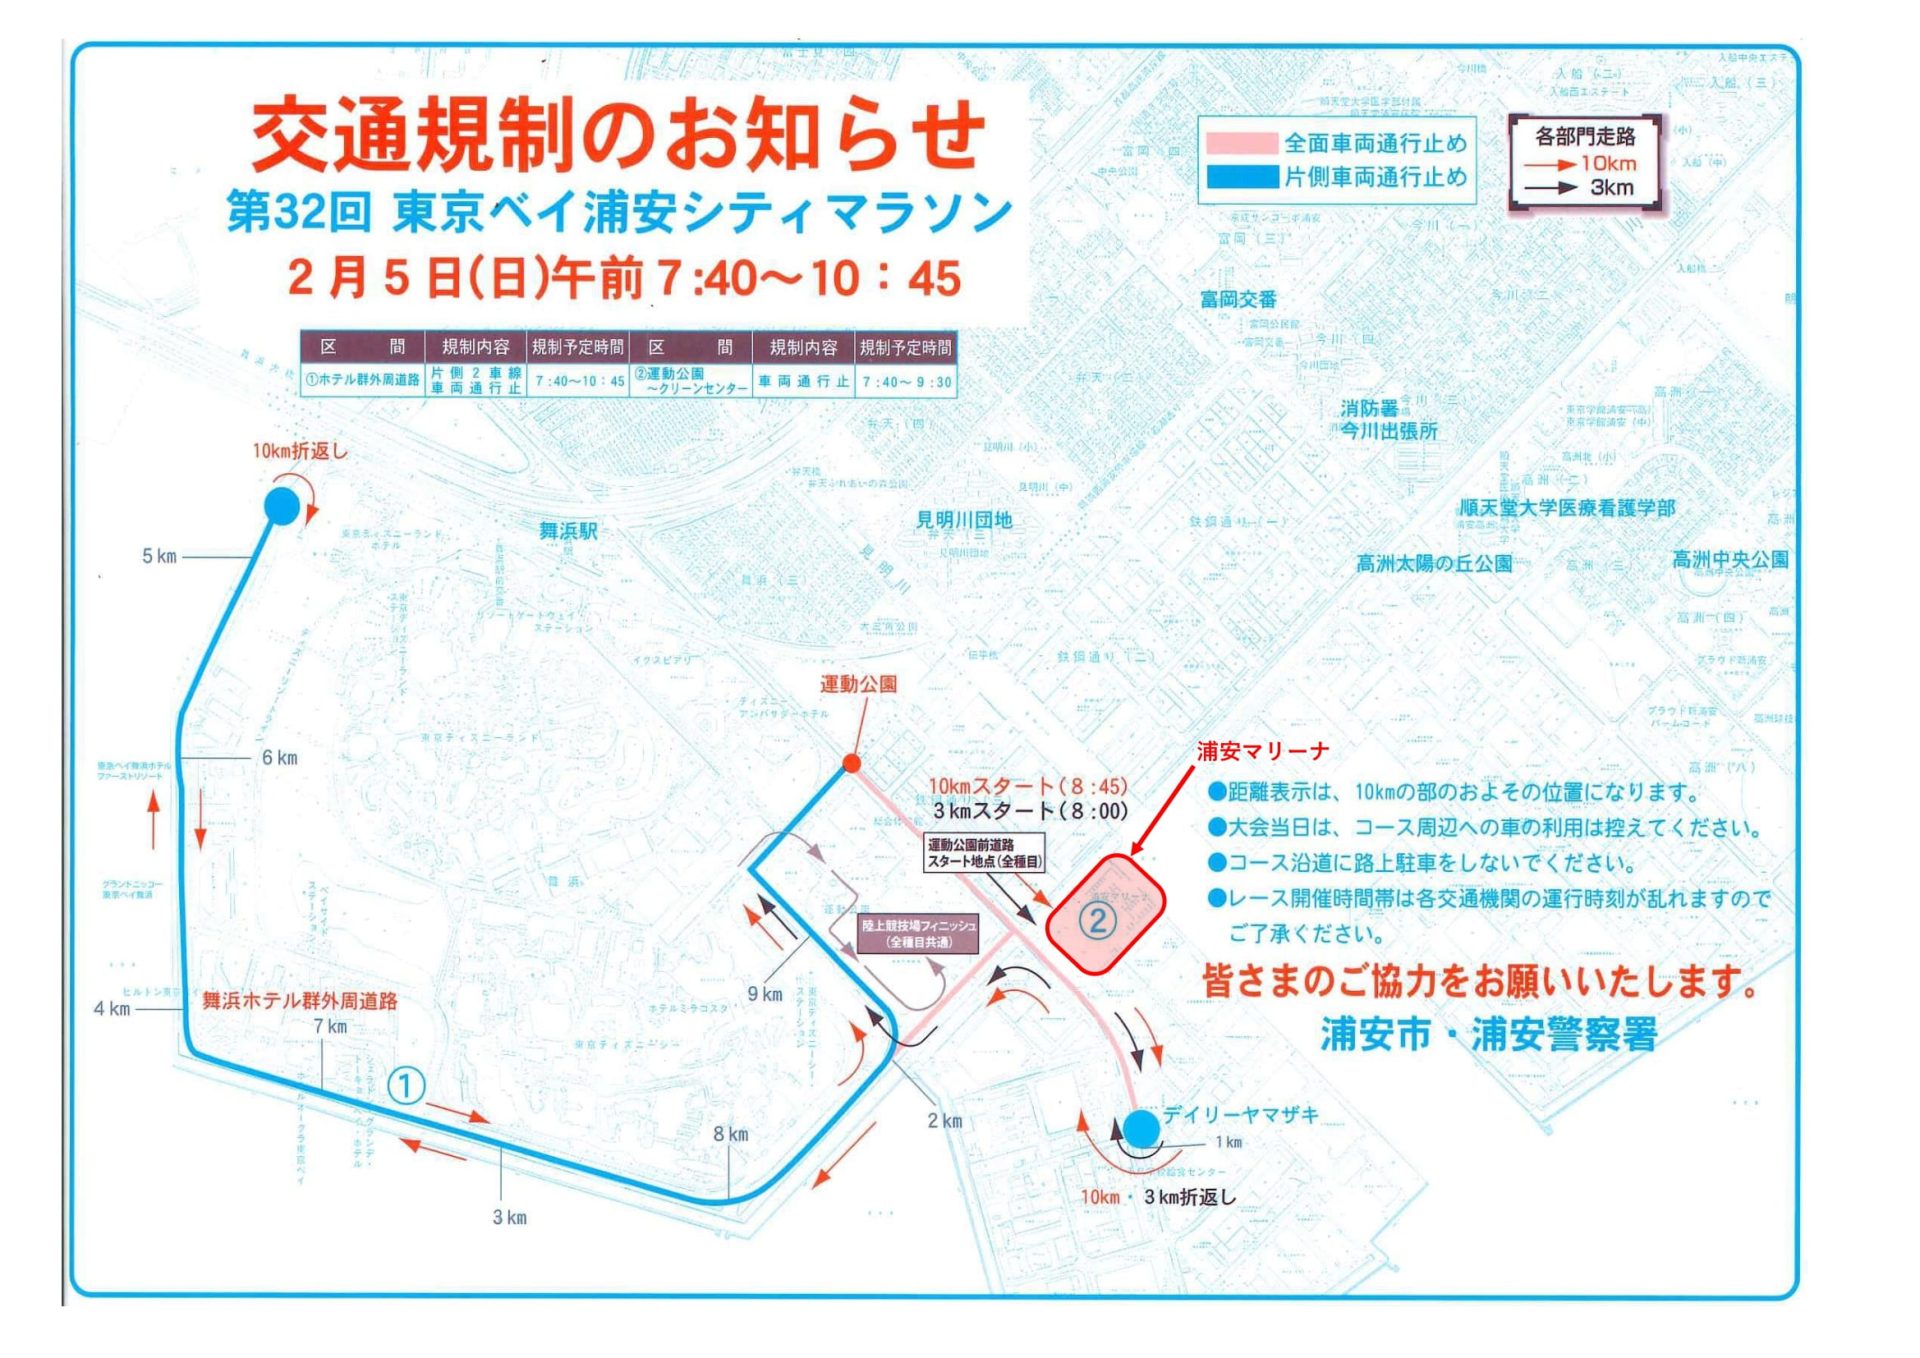 浦安シティマラソン開催における、周辺道路交通規制のお知らせ